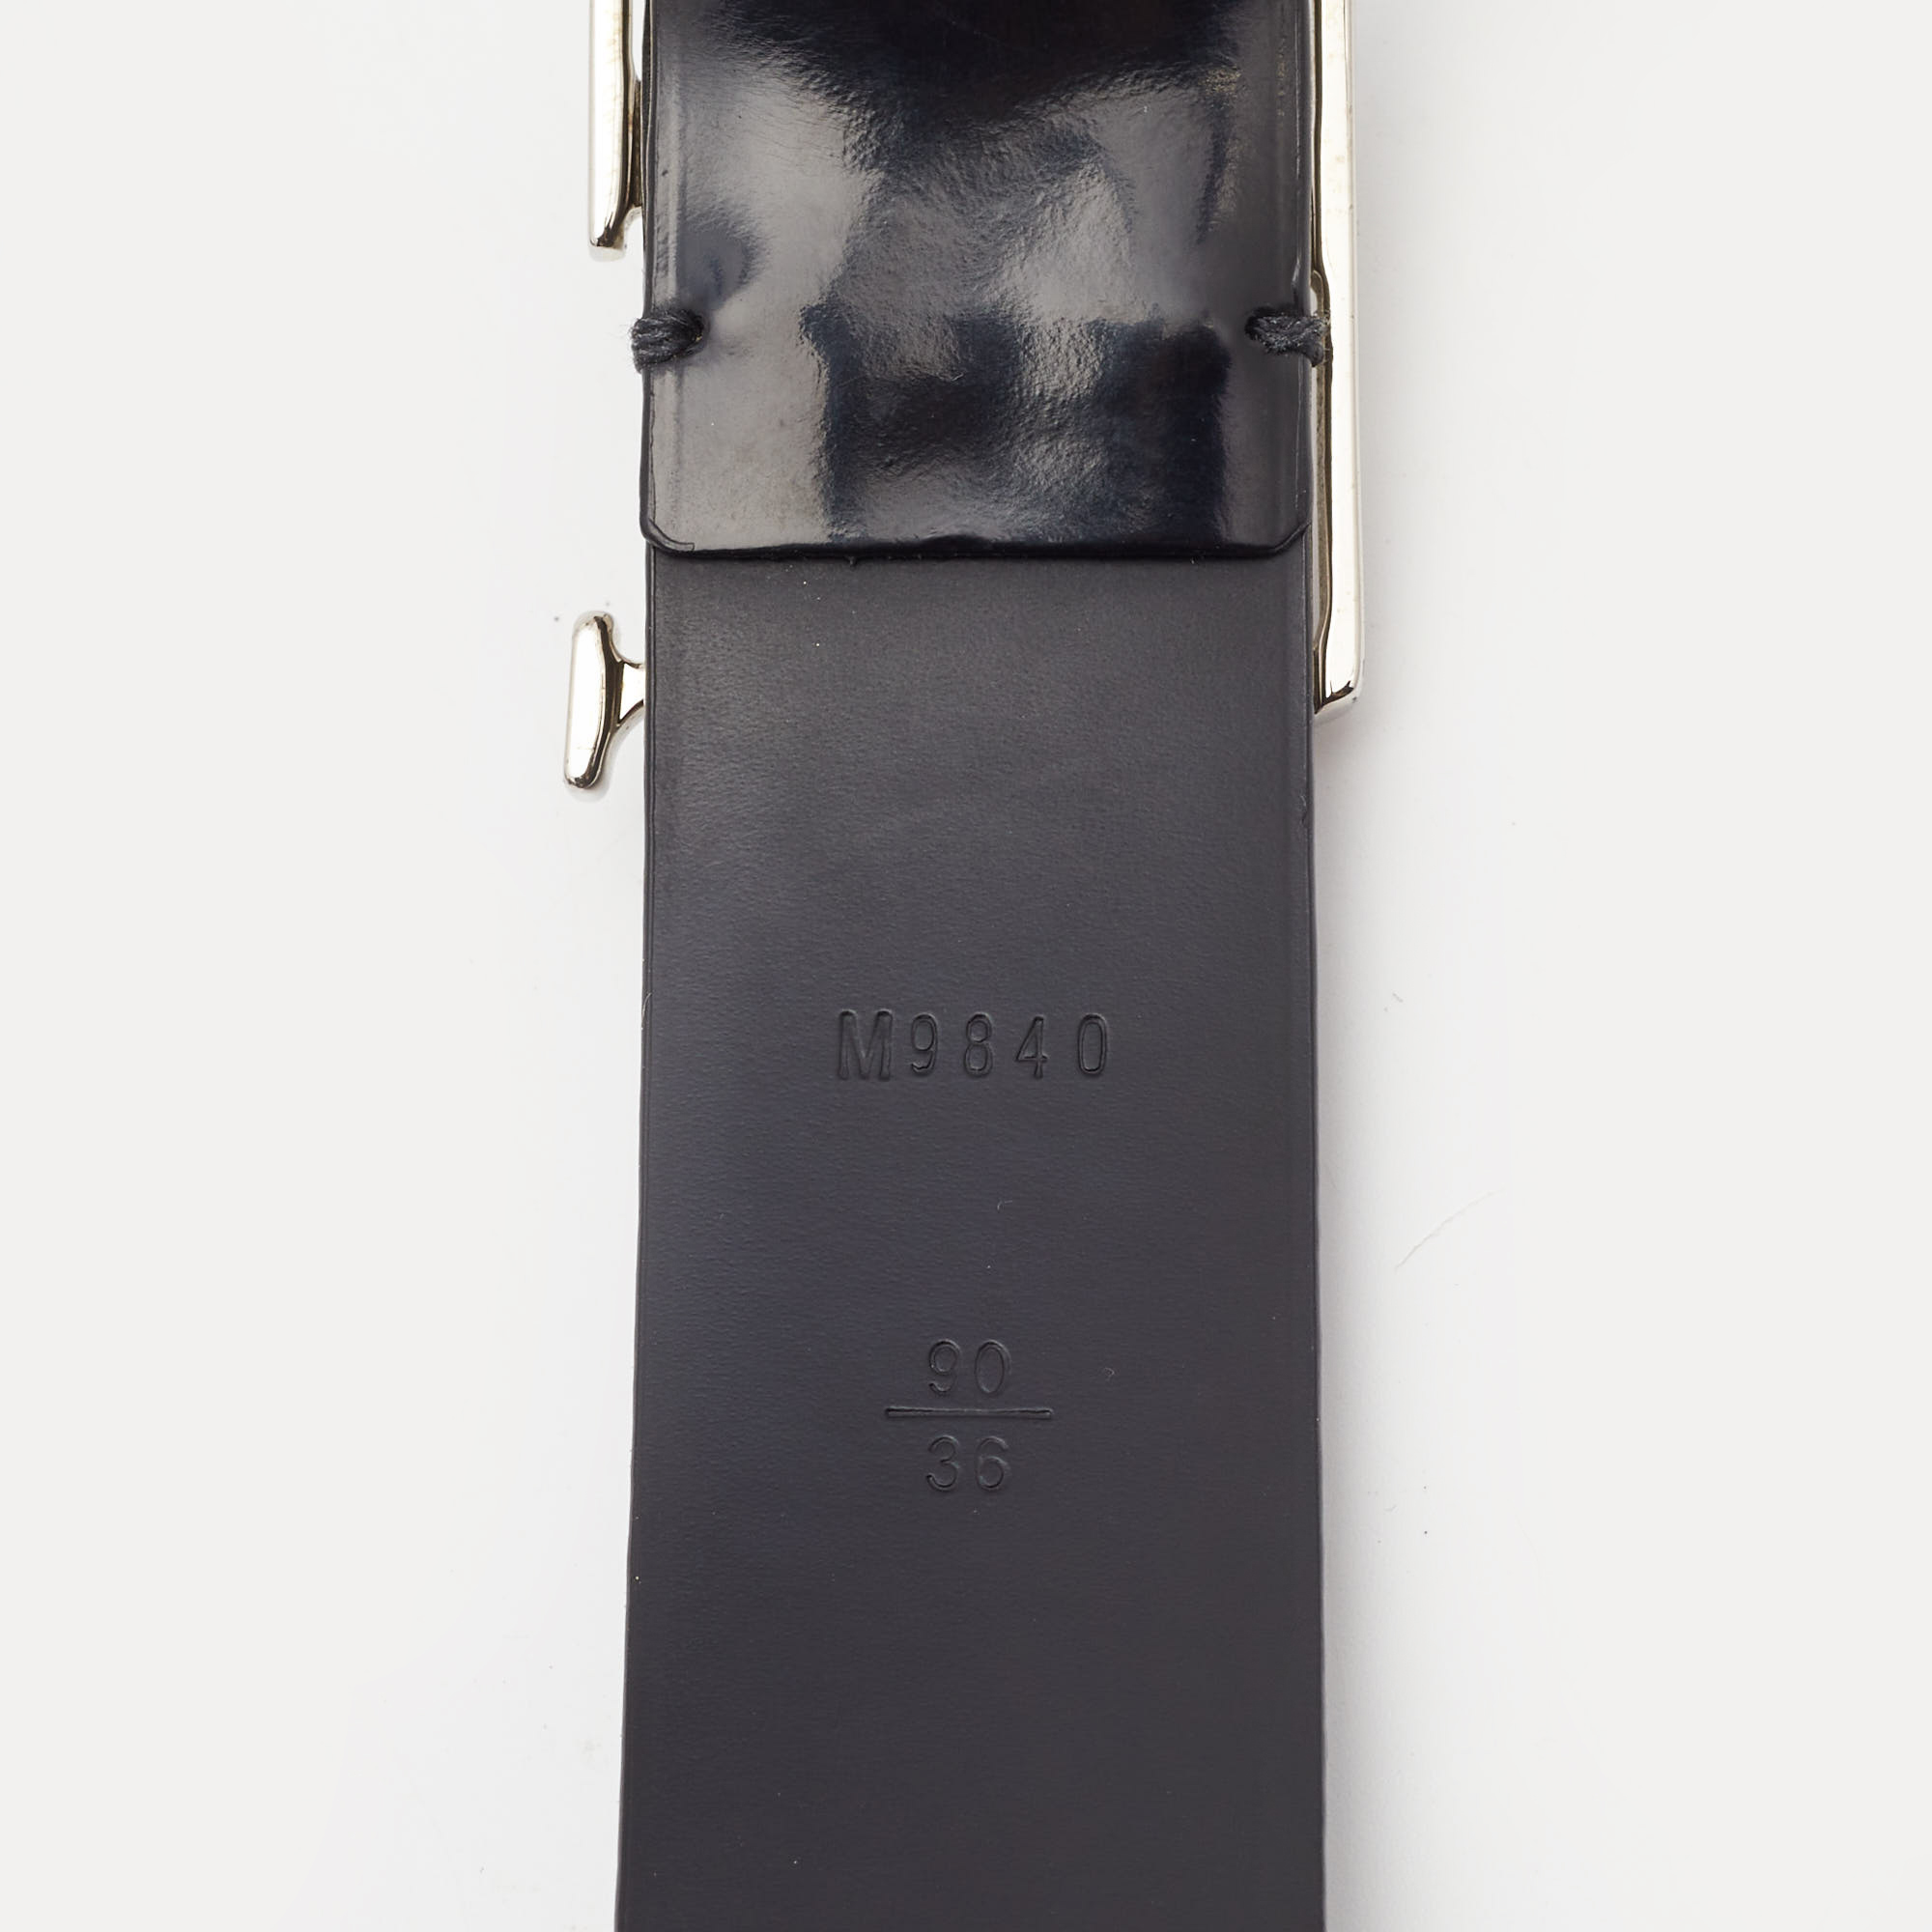 Louis Vuitton Black Leather Neogram Belt 90CM